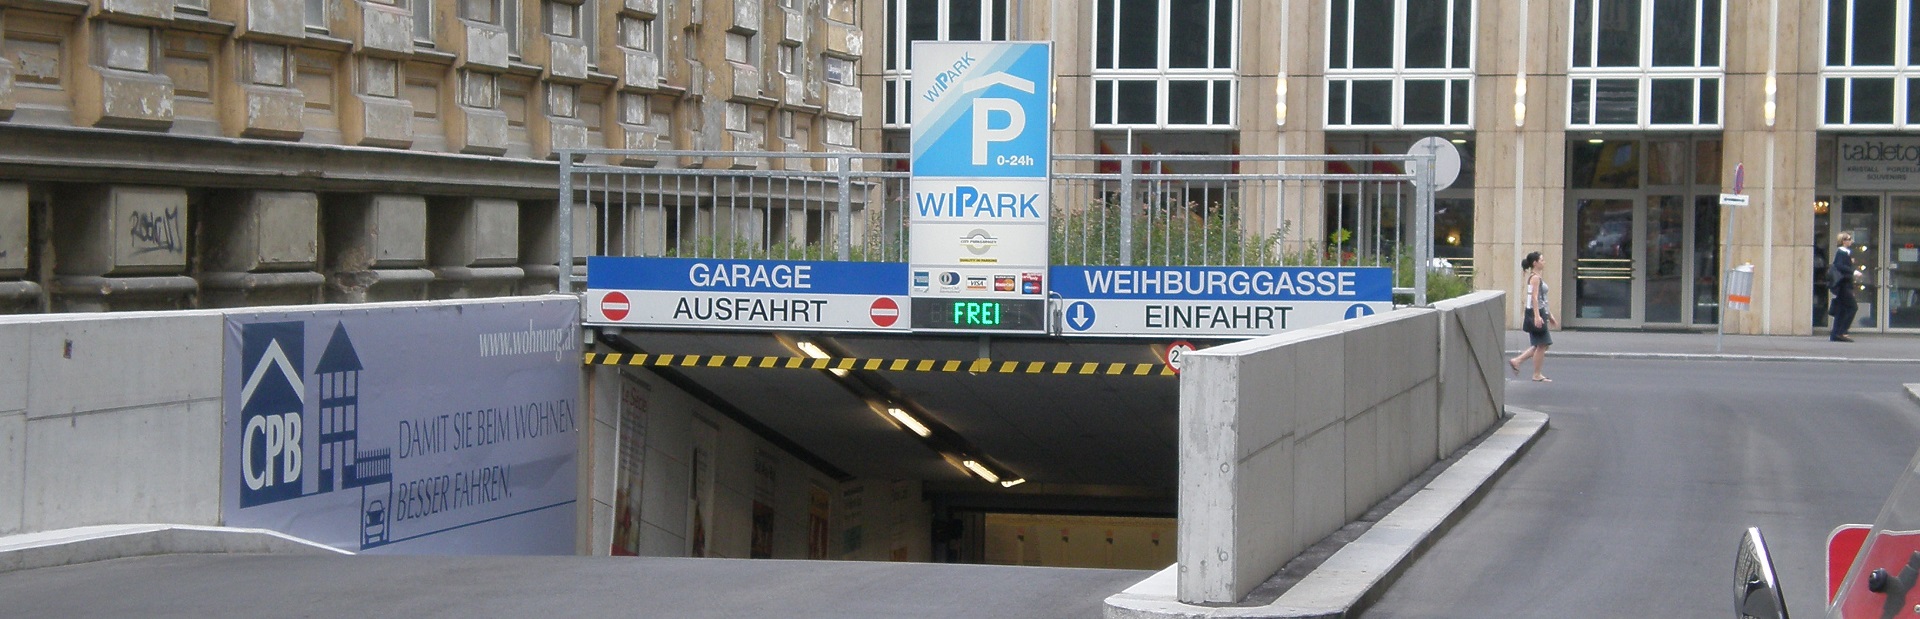 Weihburggasse 28, 1010 Wien